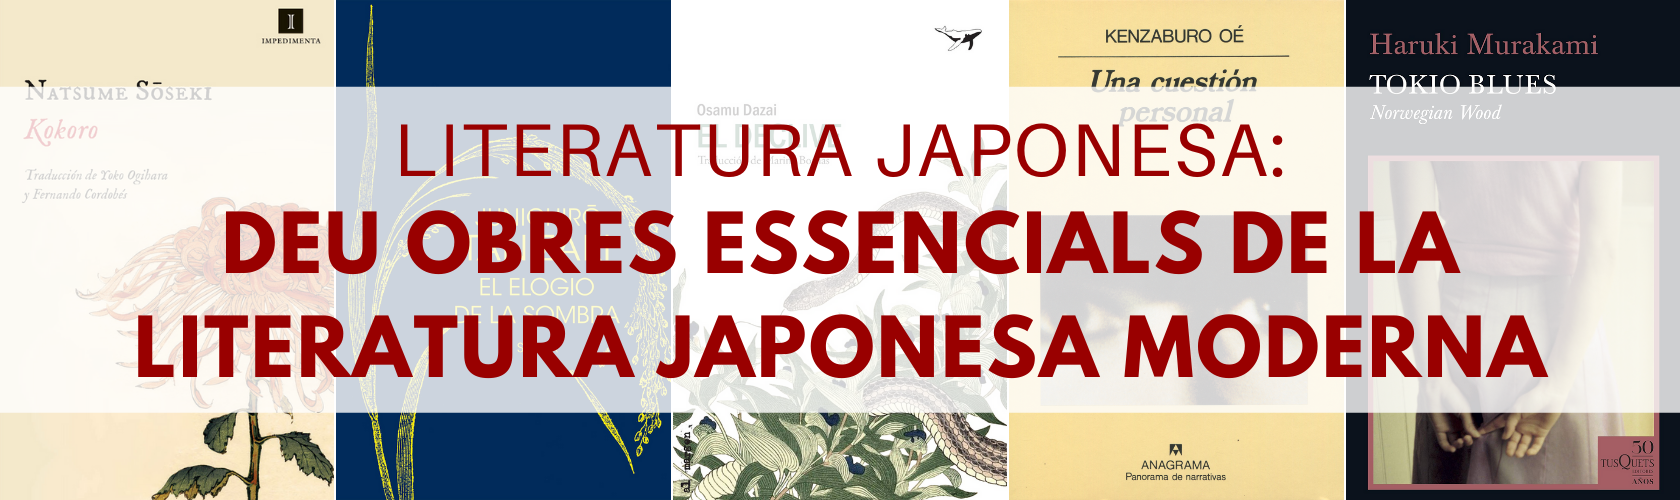 Deu obres essencials de la literatura japonesa moderna